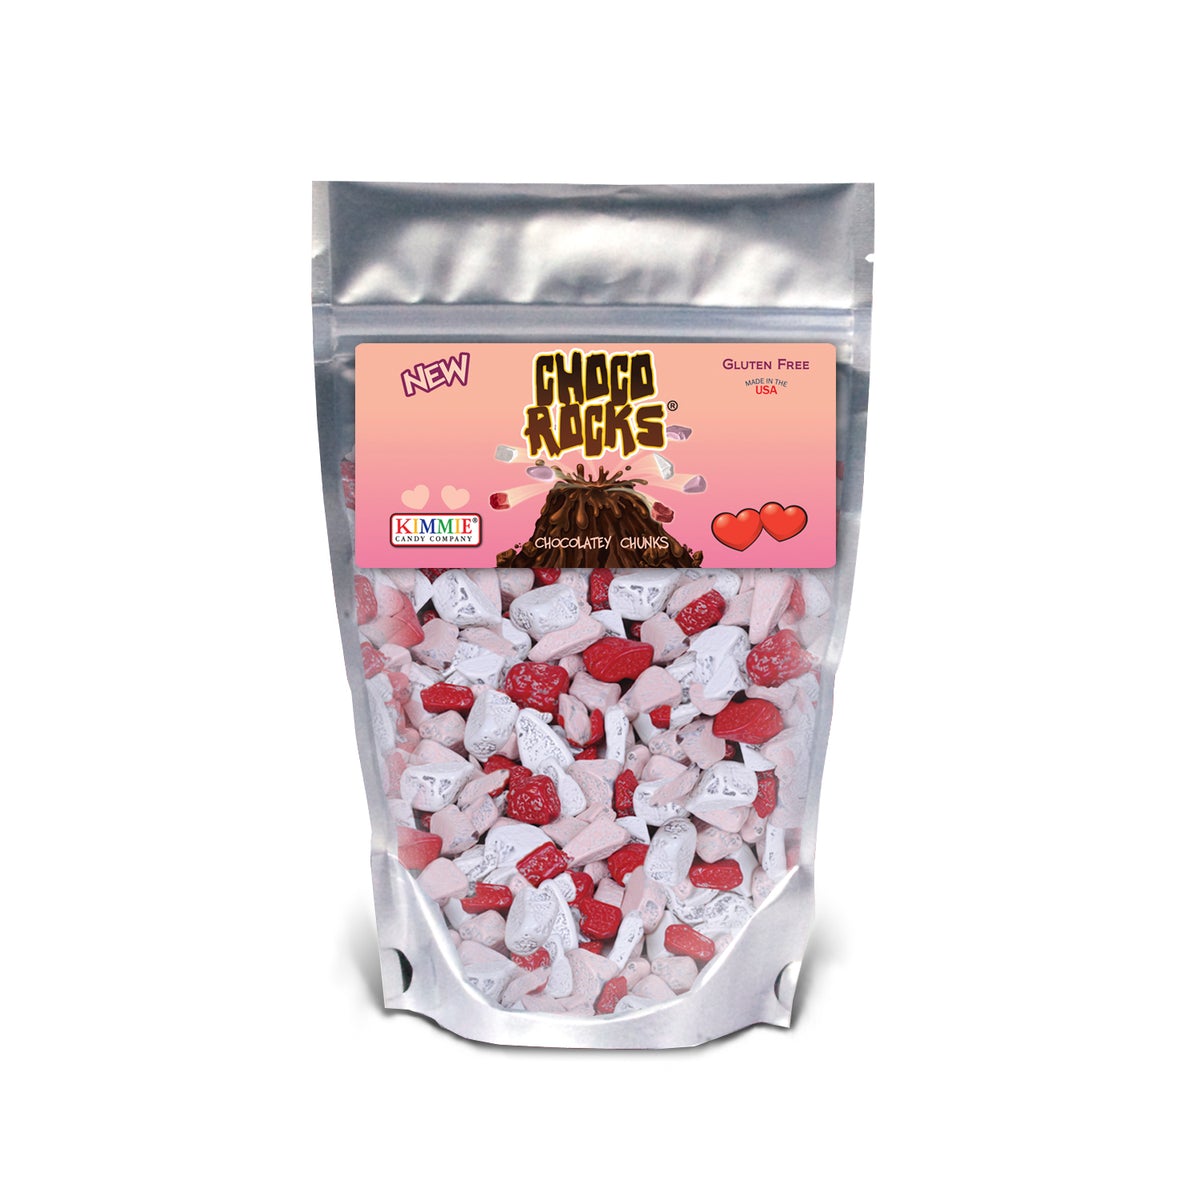 Kimmie Candy ChocoRocks® Valentine's Mix, 7.4 oz Bag